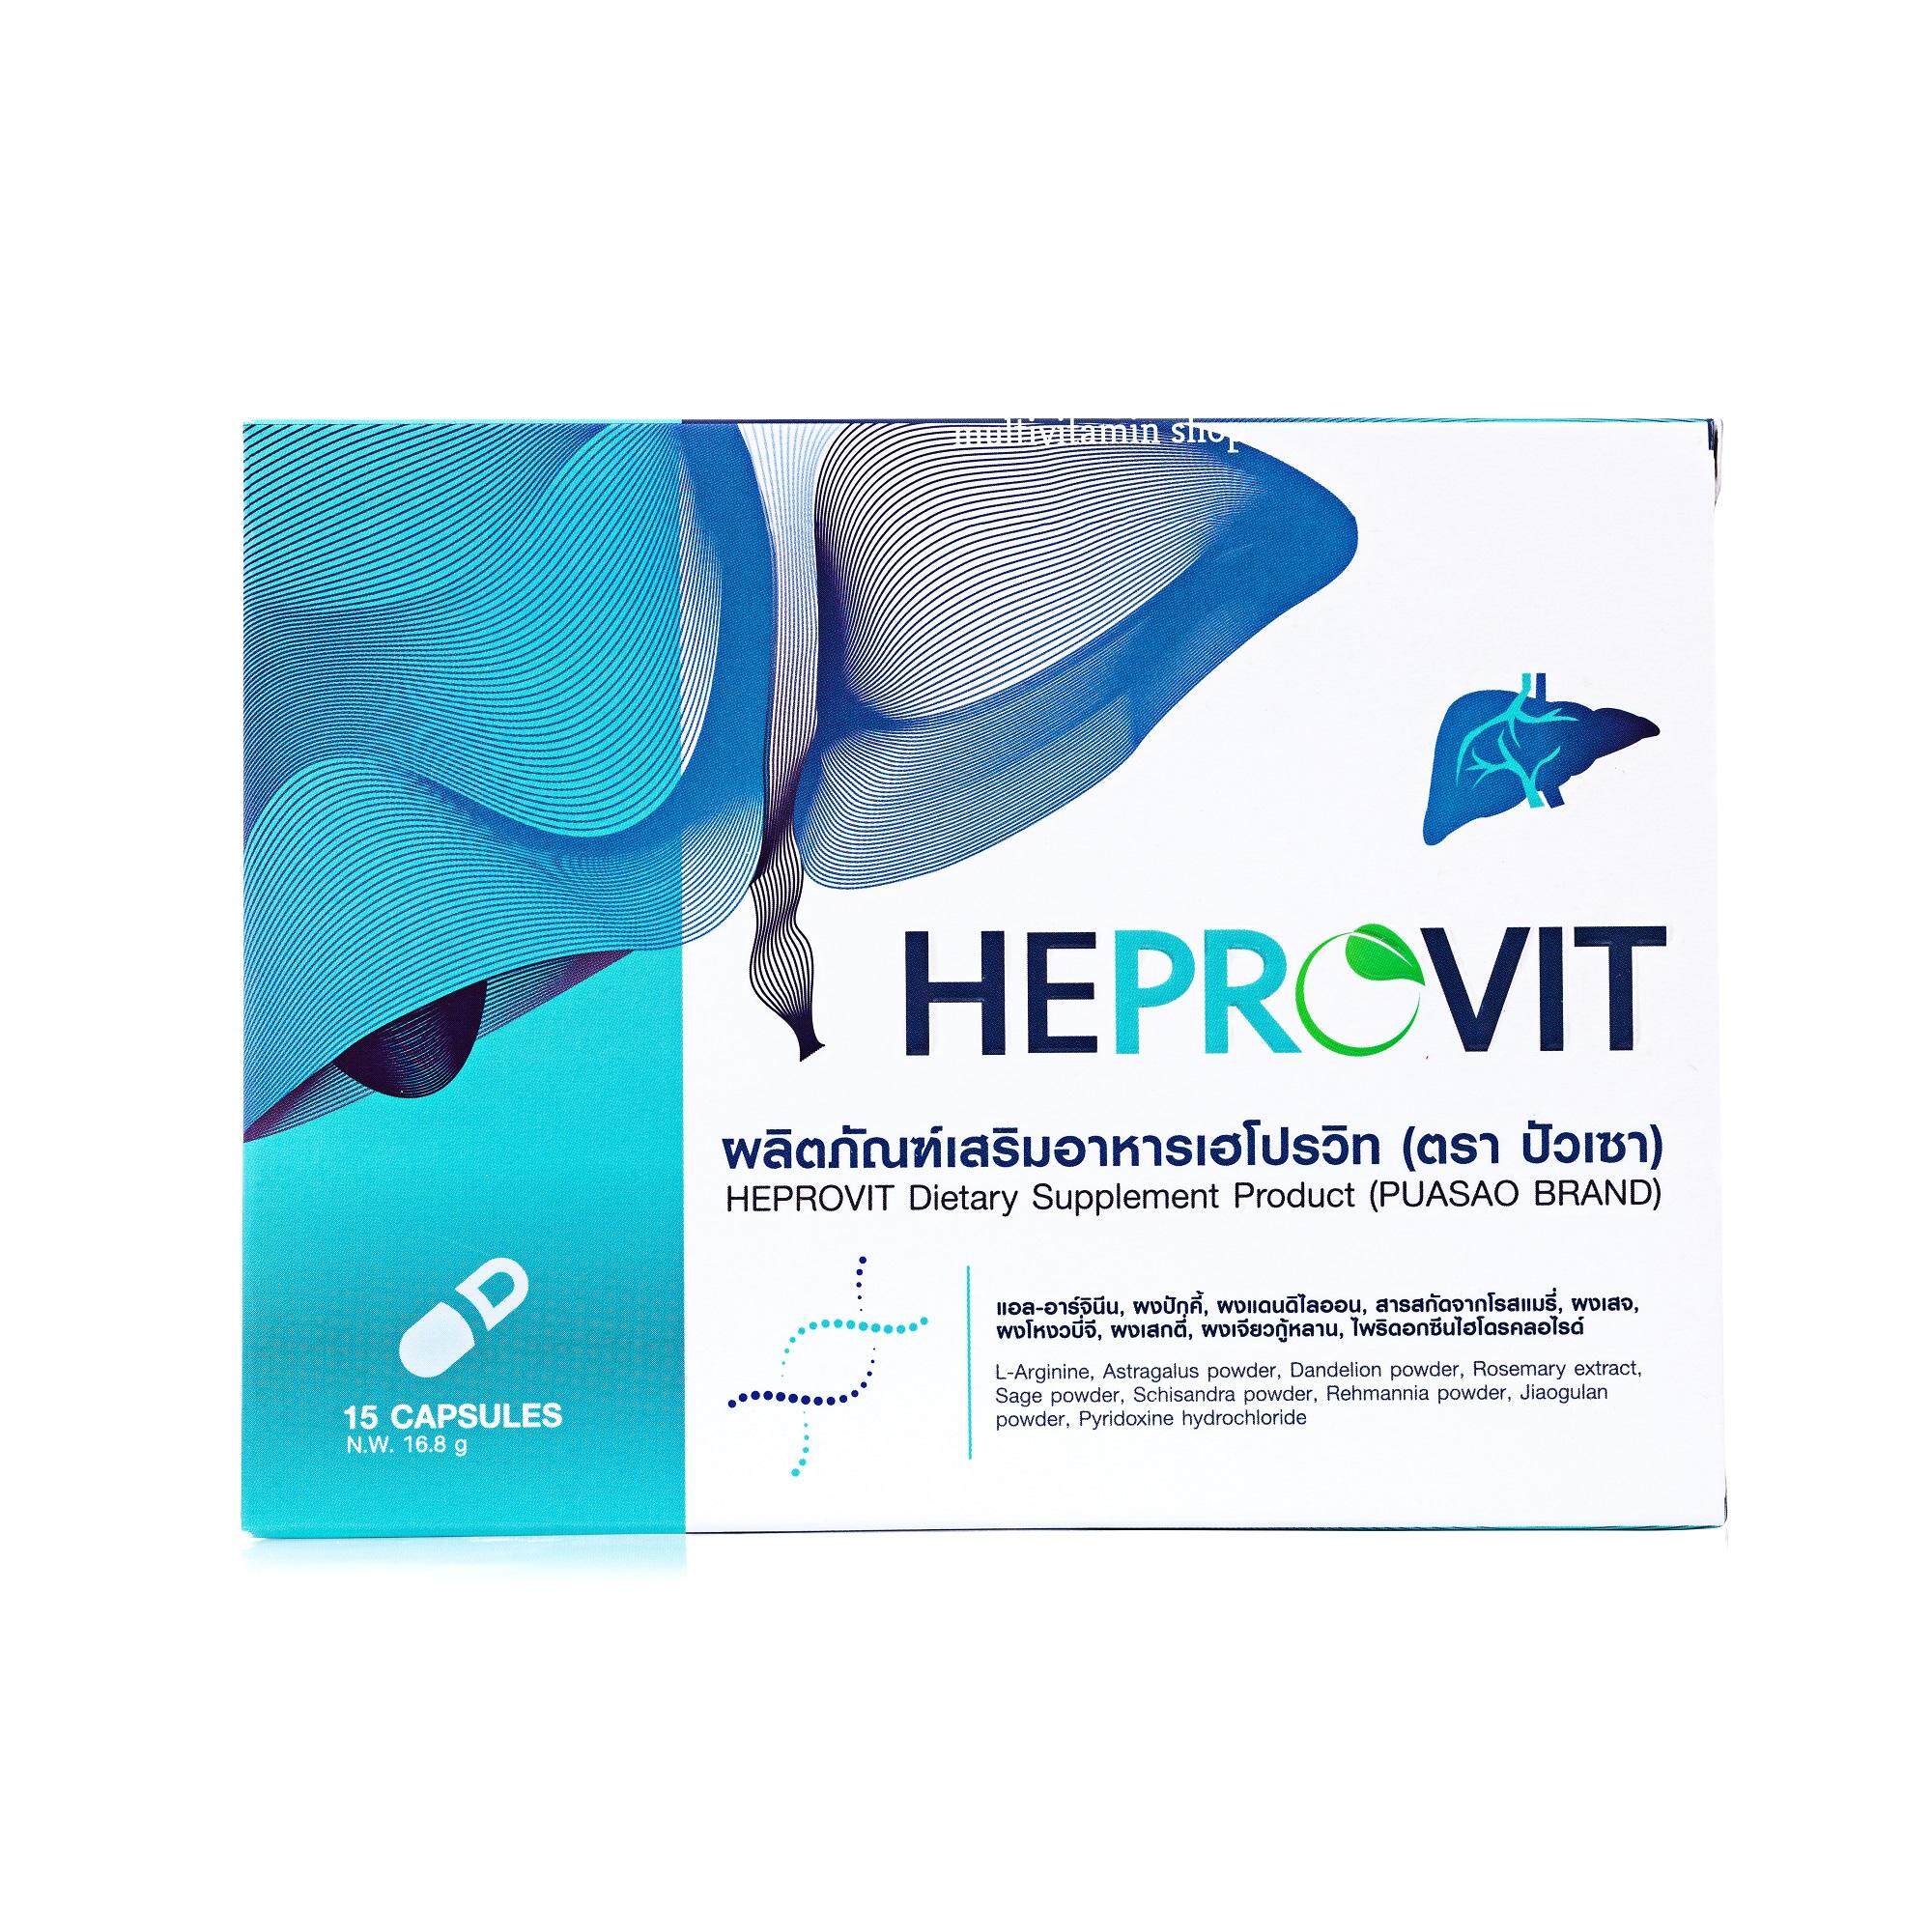 Heprovit เฮโปรวิท อาหารเสริมบํารุงตับ วิตามินบํารุงตับ อาหารเสริมตับ อาหารเสริมฟื้นฟูตับ ล้างพิษตับระดับเซลล์ 15 แคปซูล 1 กล่อง